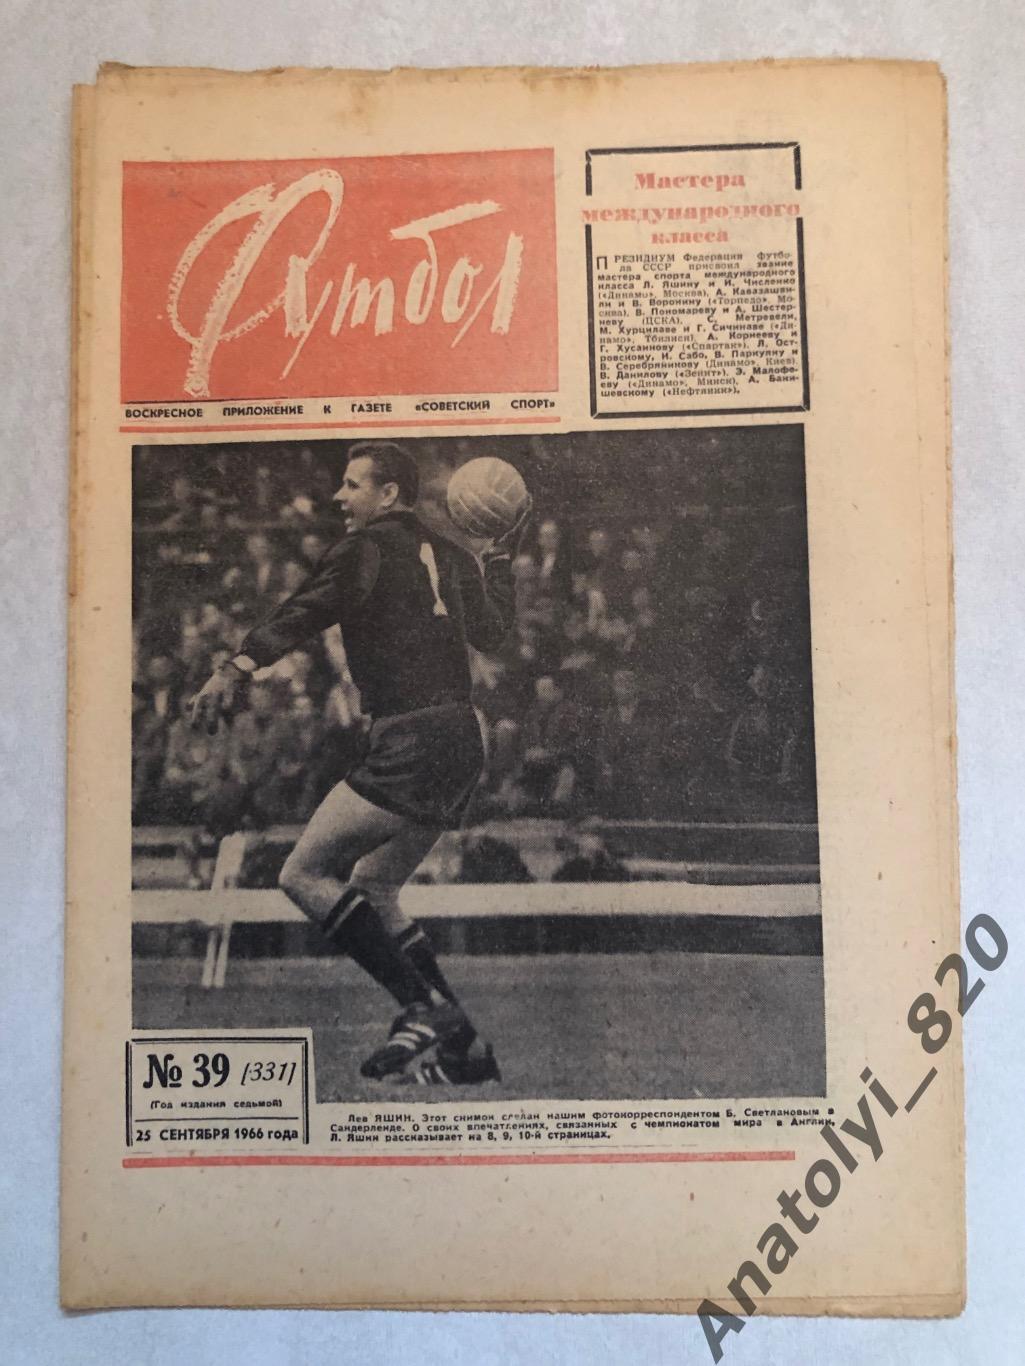 Еженедельник футбол номер 39 от 25.09.1966